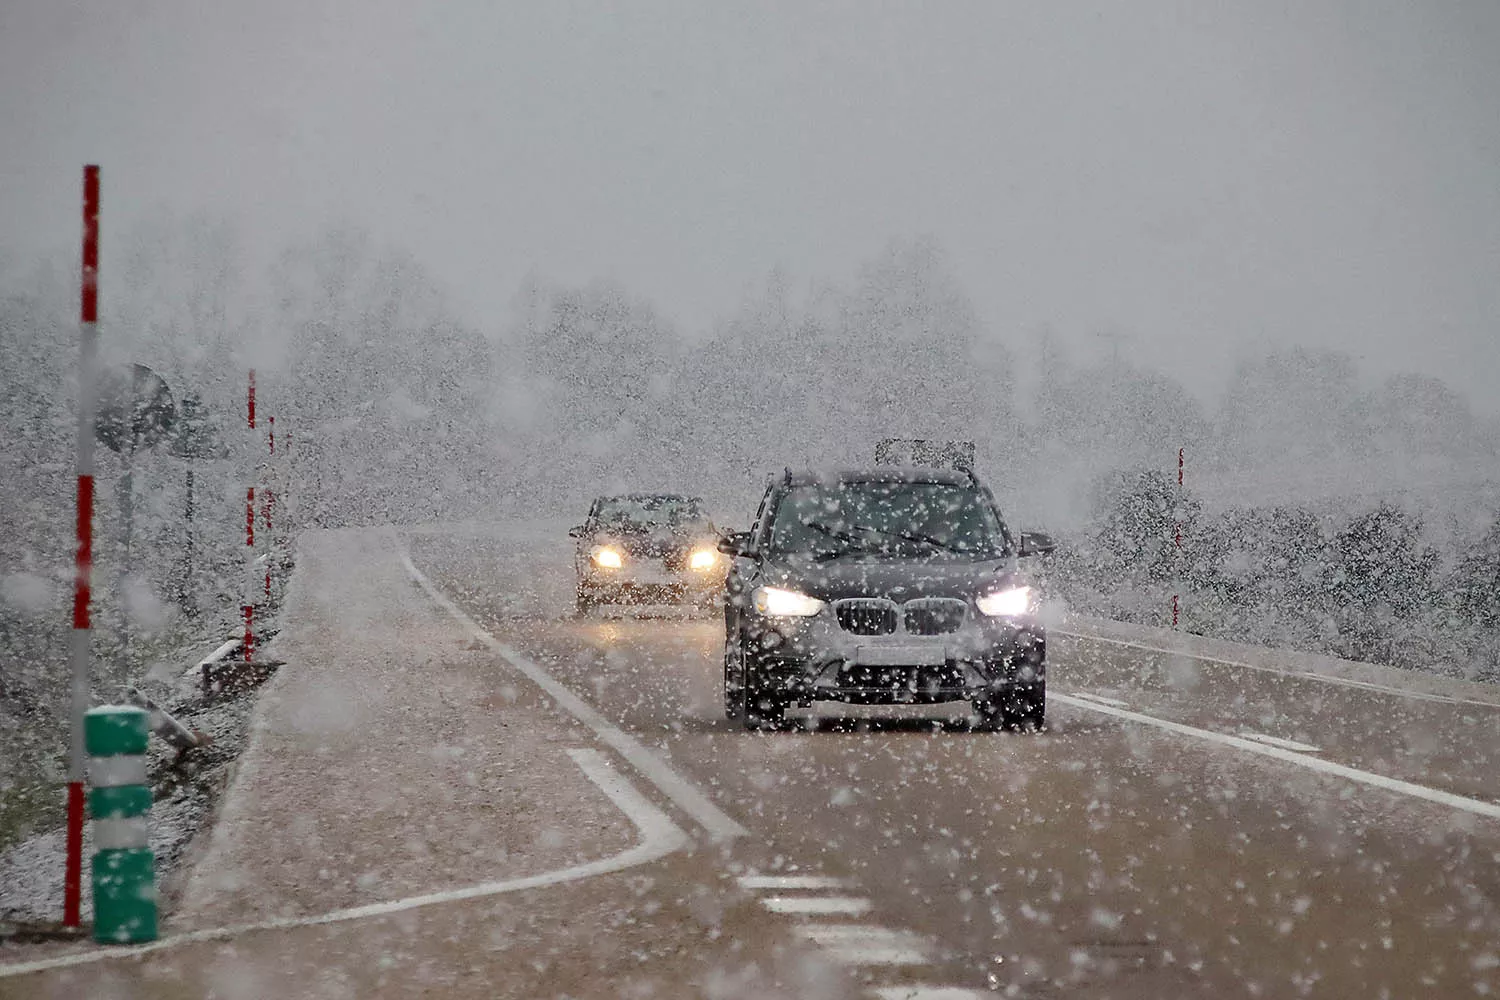 Nieve en las carreteras